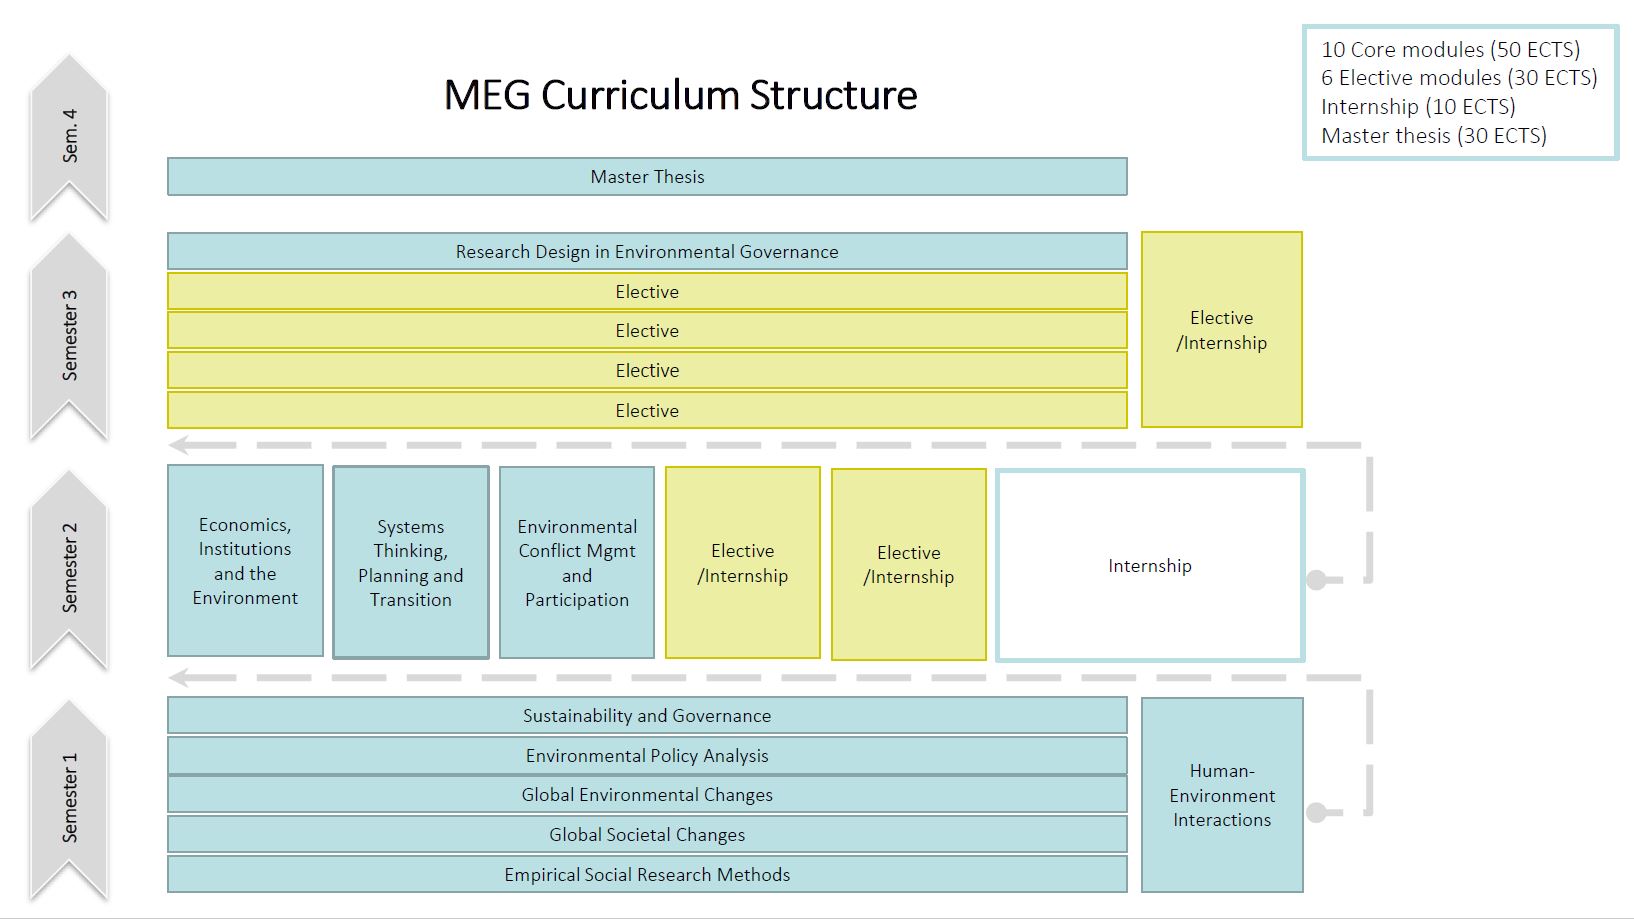 MEG Curriculum Overview